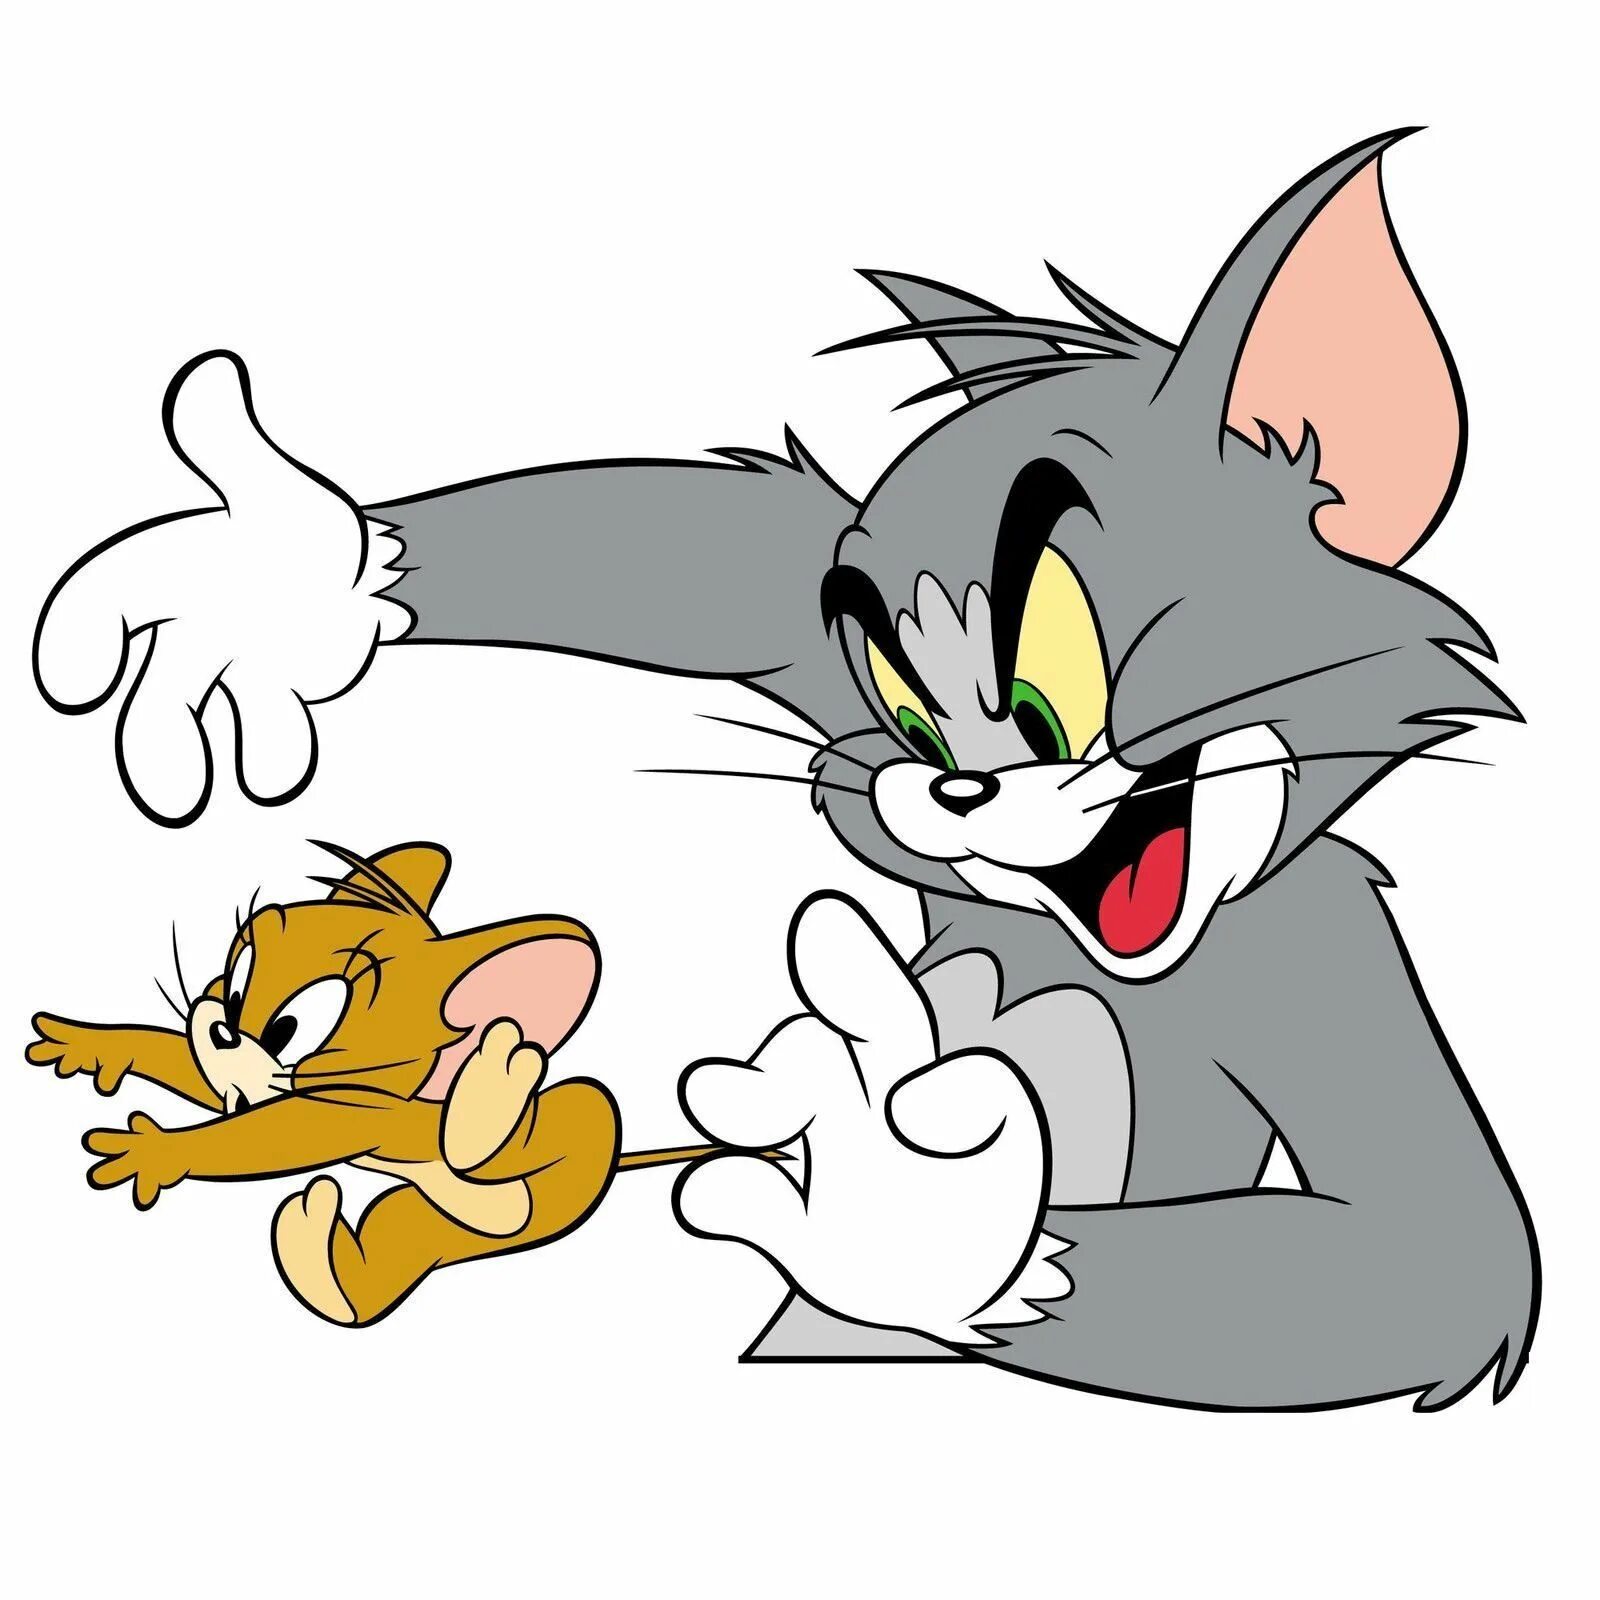 Создать тома и джерри. Tom and Jerry. Tom 7 Jerry. Том держит Джерри. Том и Джерри картинки.